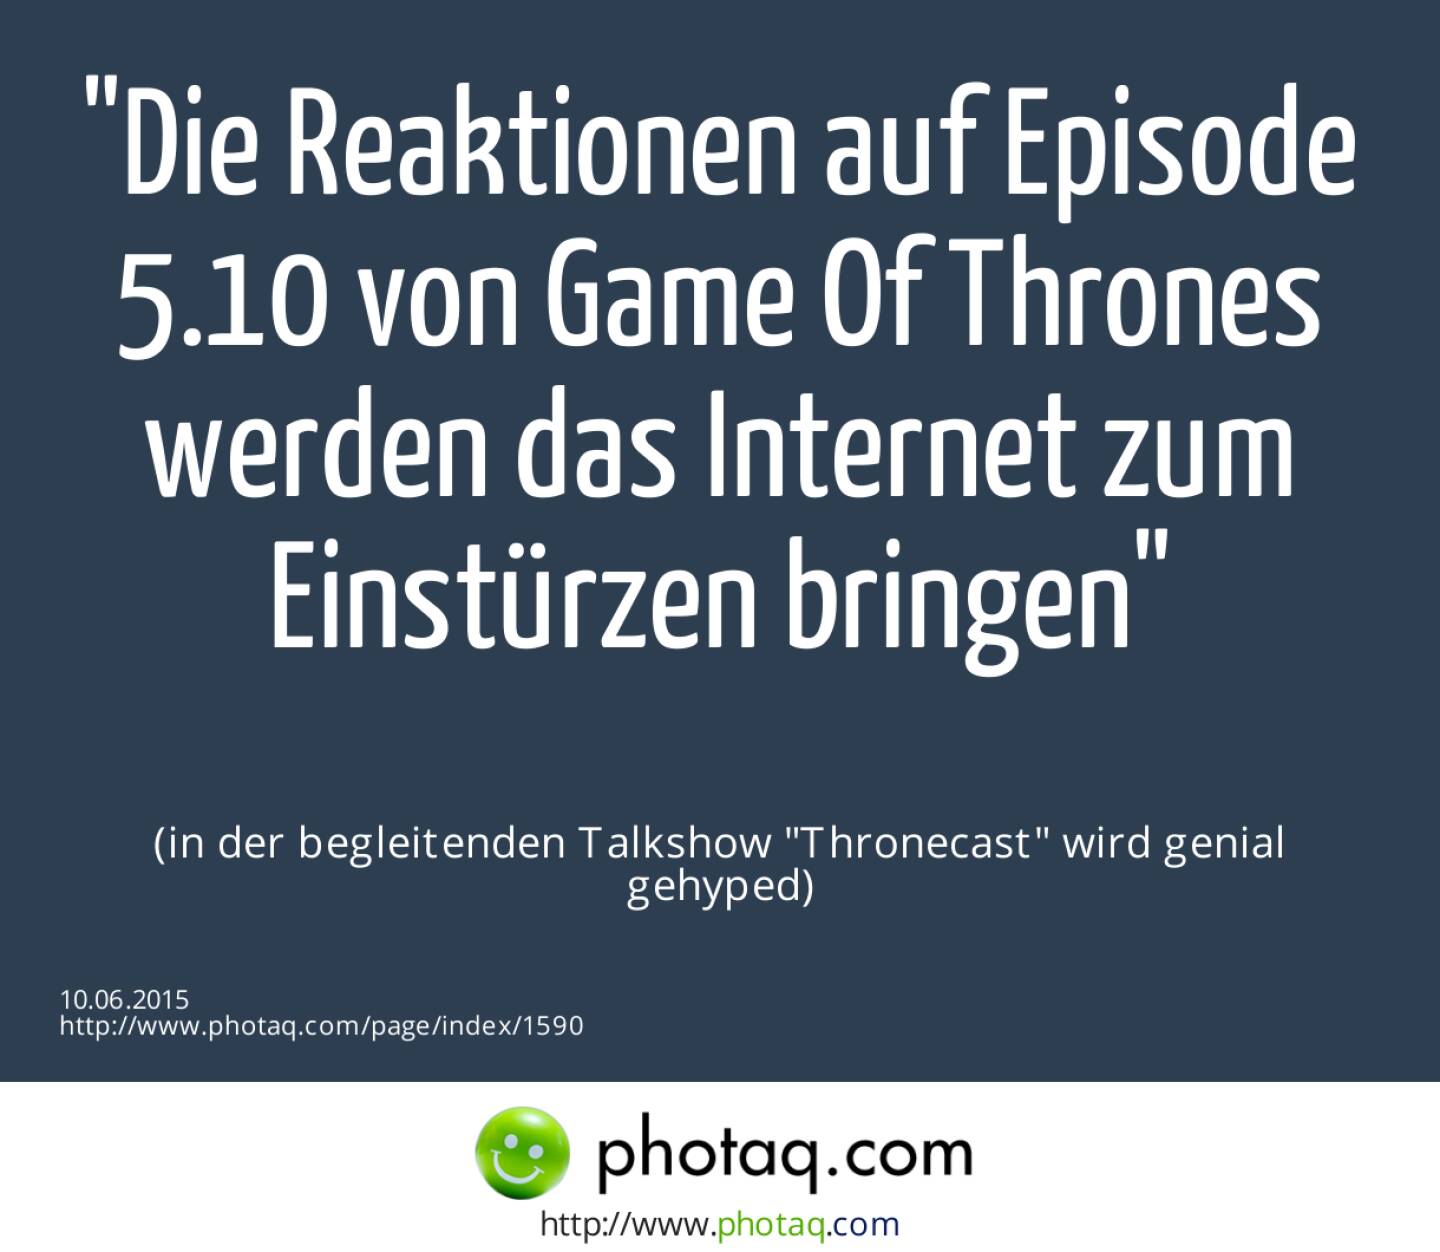 Die Reaktionen auf Episode 5.10 von Game Of Thrones werden das Internet zum Einstürzen bringen<br><br> (in der begleitenden Talkshow Thronecast wird genial gehyped)